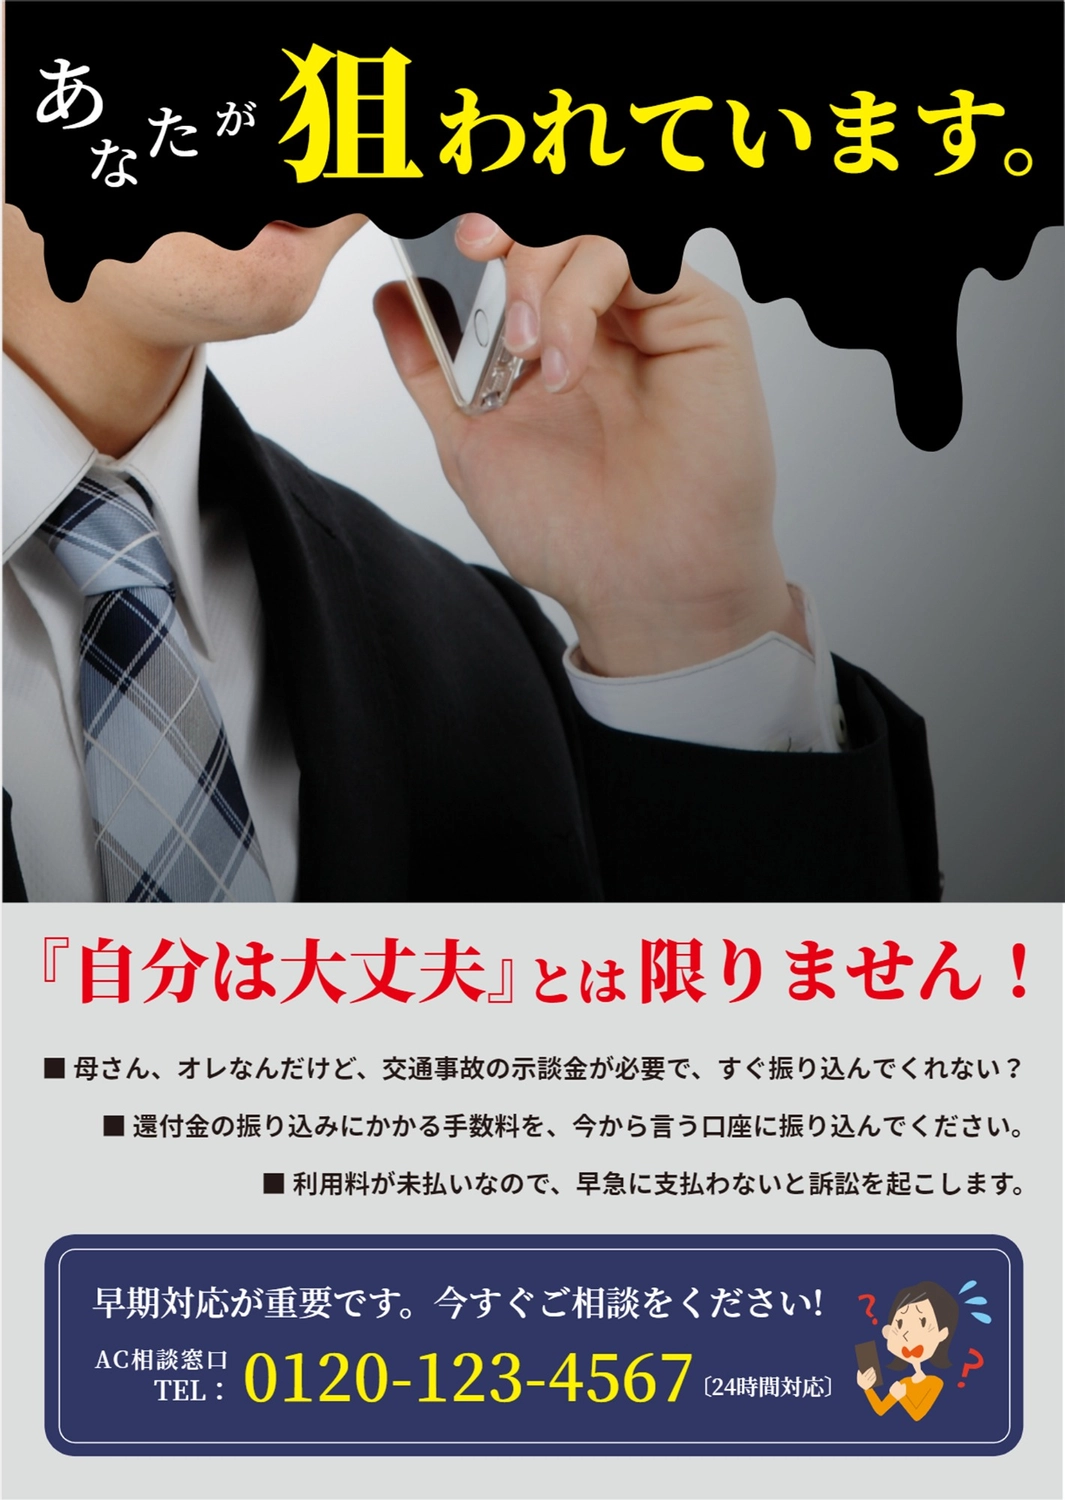 ネクタイの男性の写真を使った詐欺の注意を促すポスター

, 特殊詐欺, 注意喚起, 注意, 海報 模板